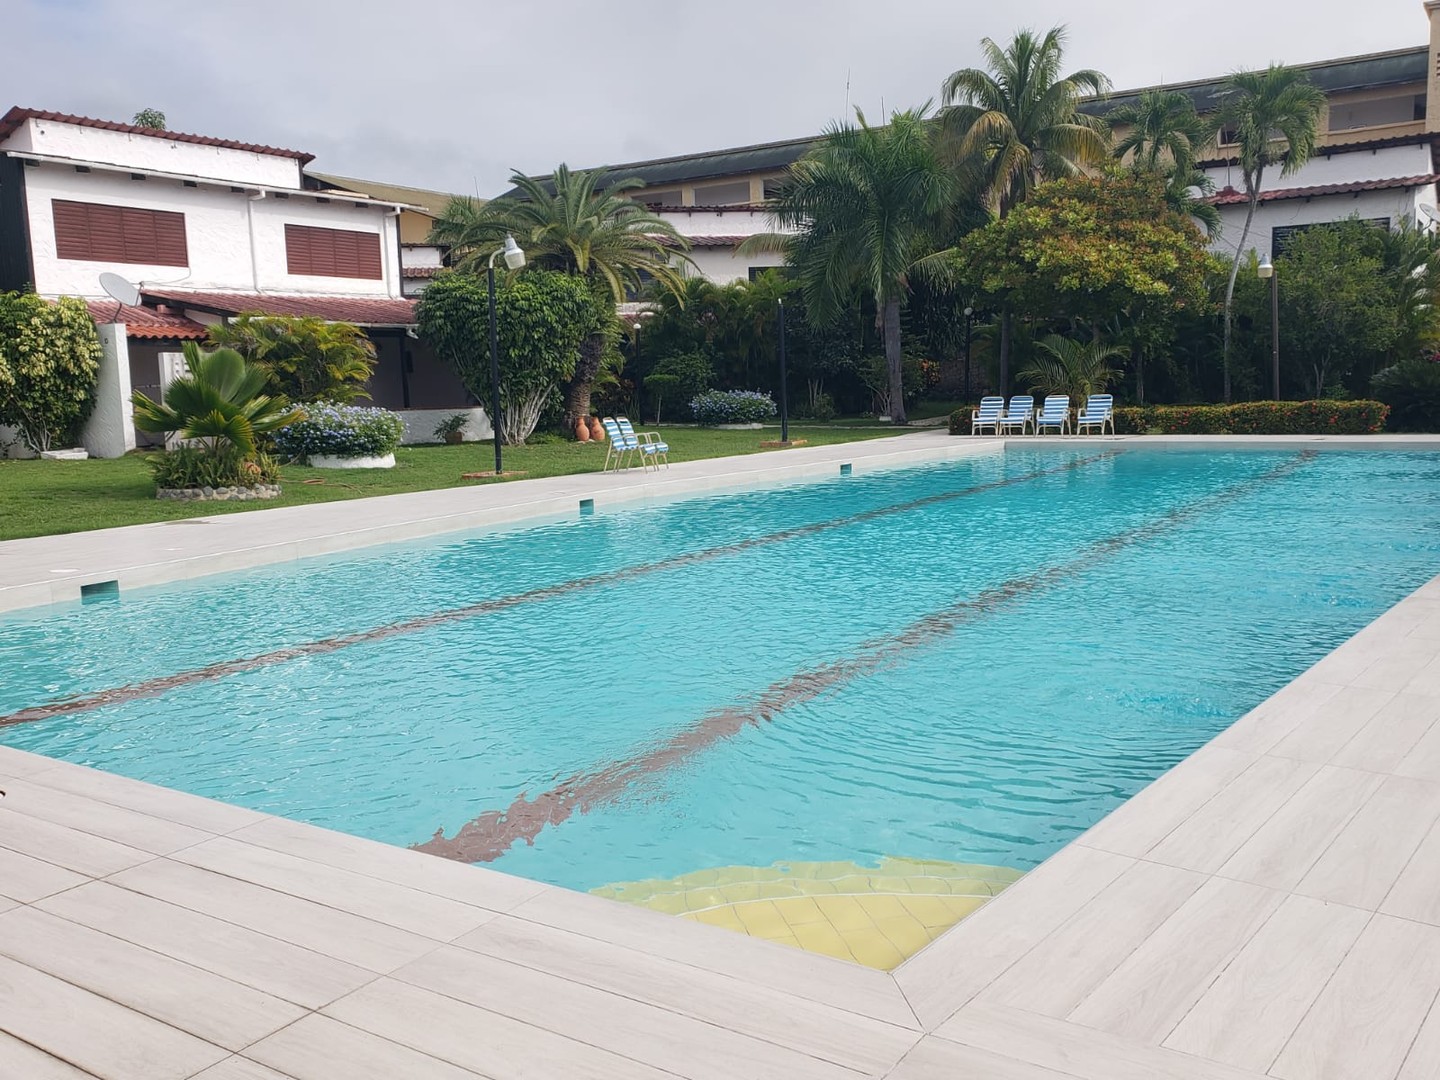 Preciosa villa amueblada en Juan Dolio con playa, piscina, jardin, BBQ